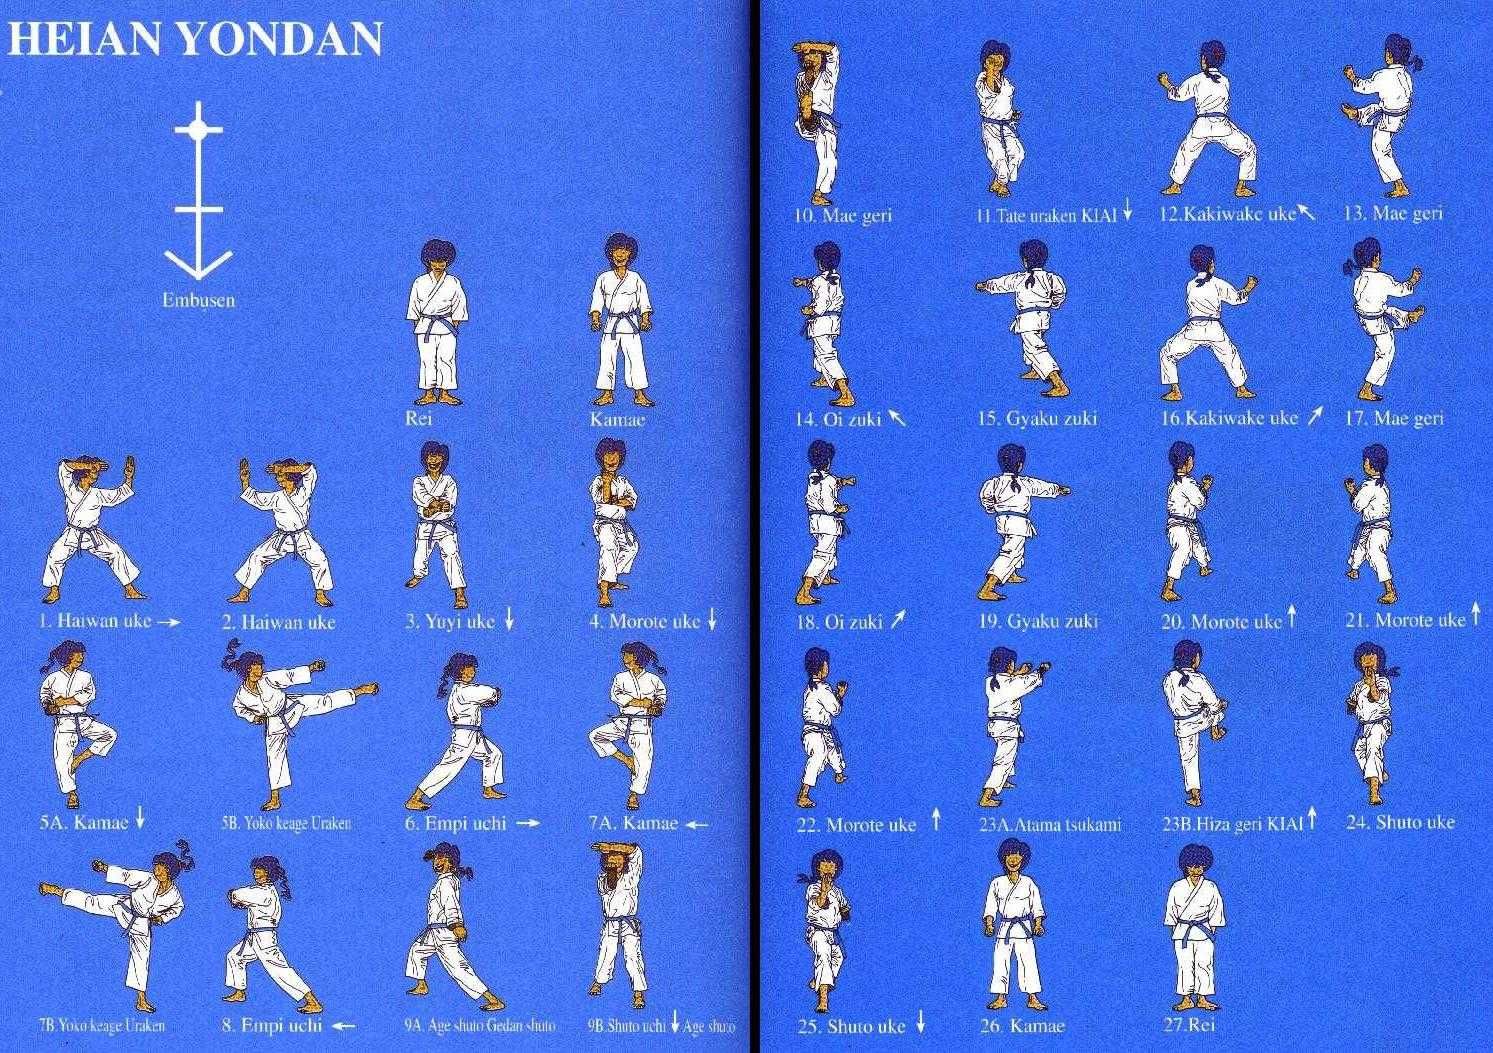 Planche Heian Yondan.jpg 1,493×1,053 pixels | Karate kata, Karate